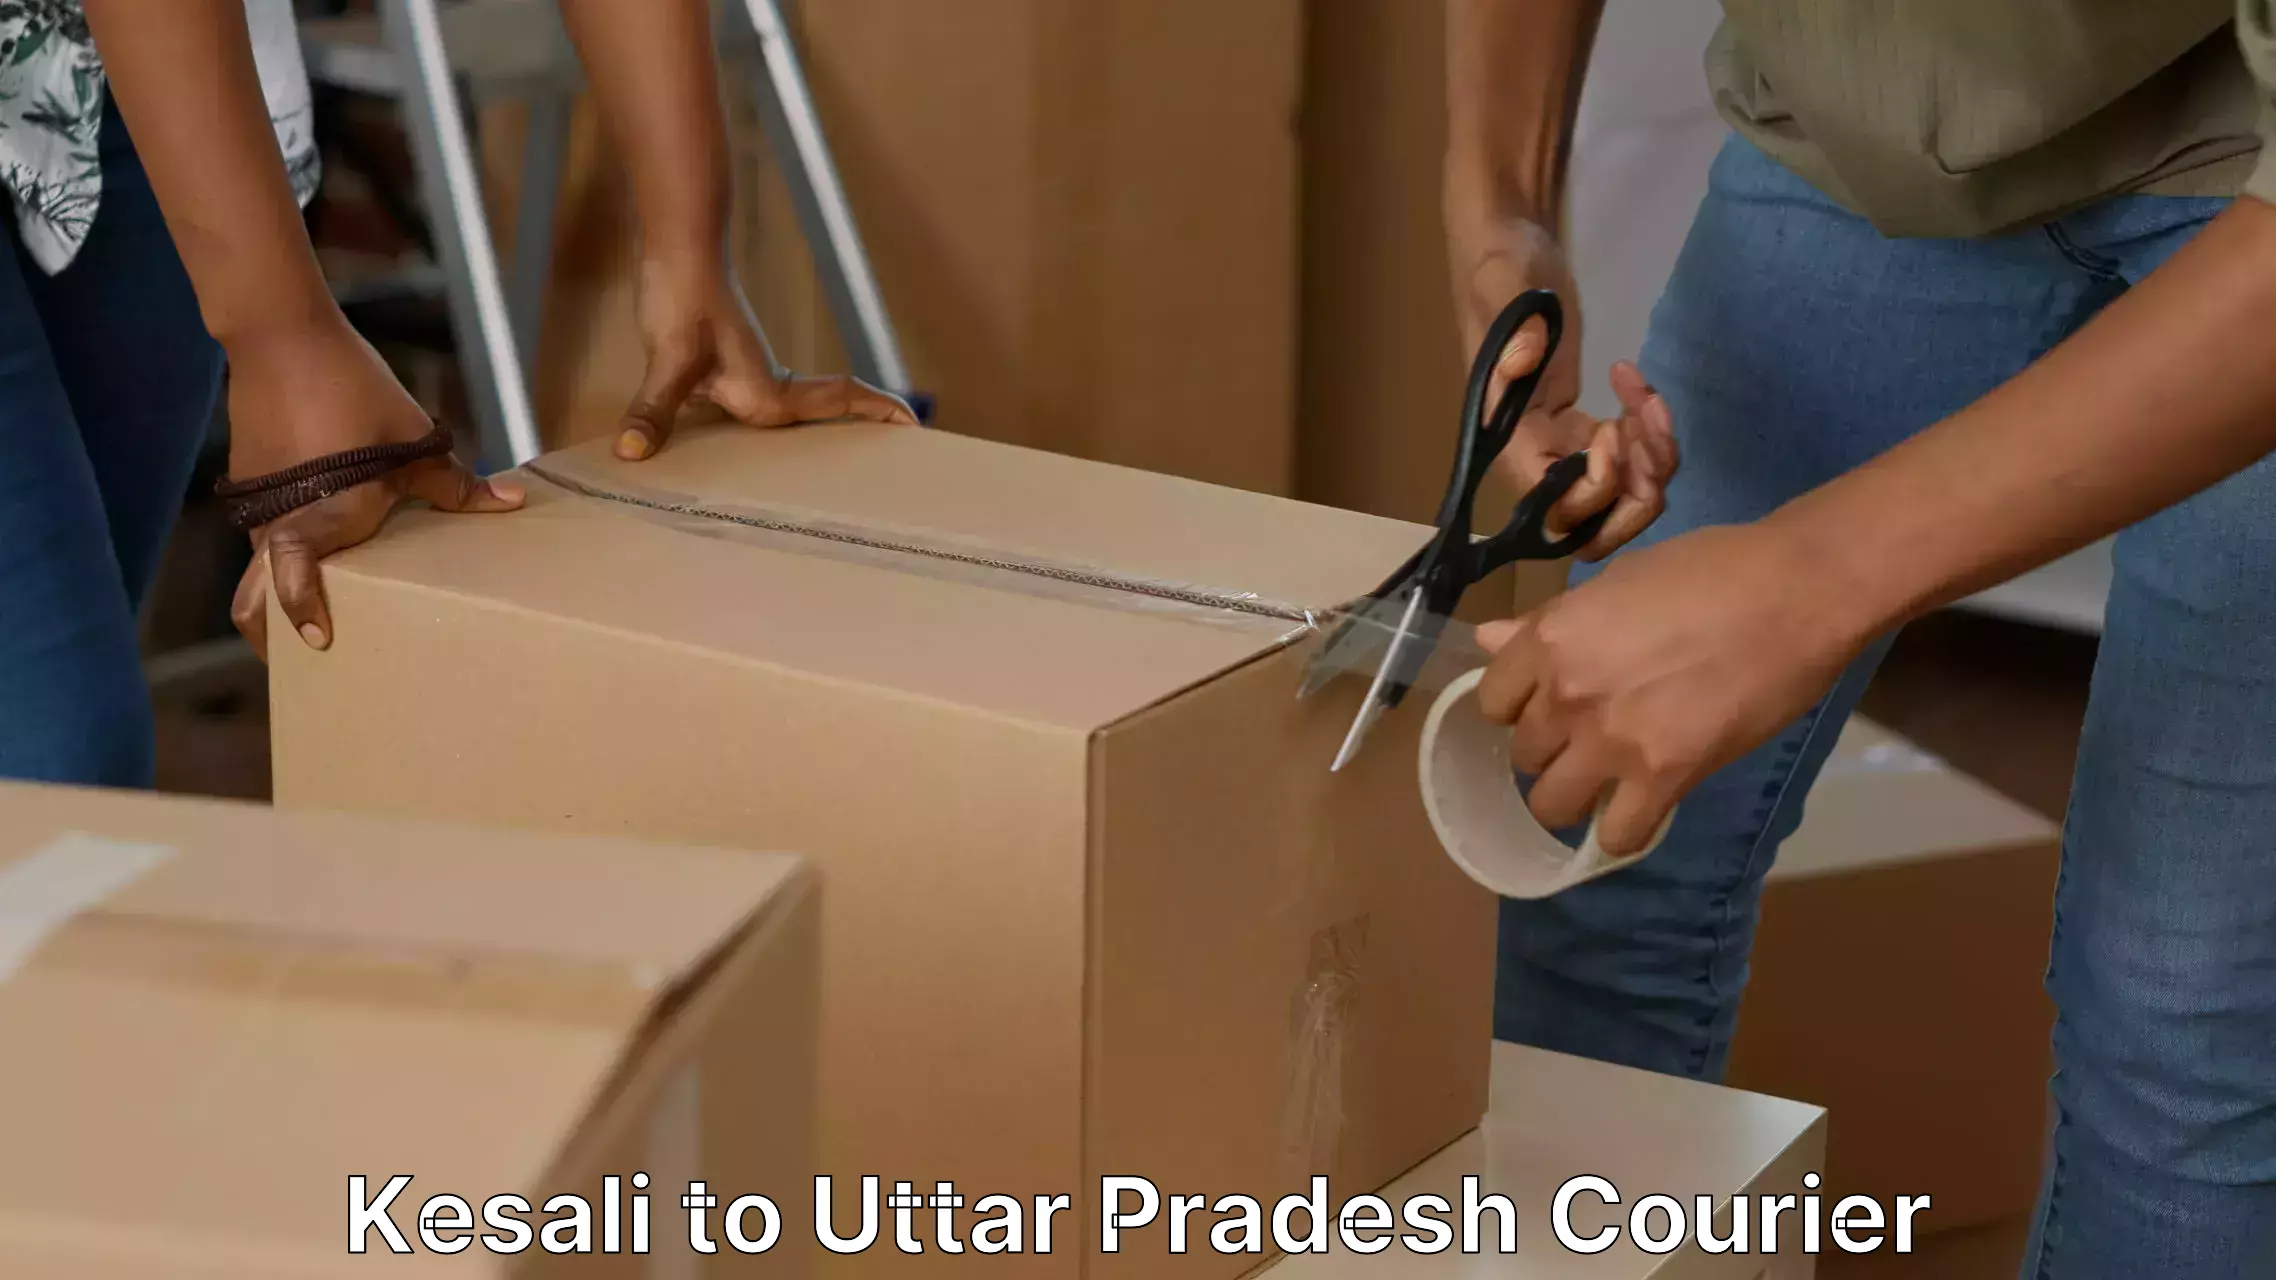 Furniture moving experts Kesali to Sambhal